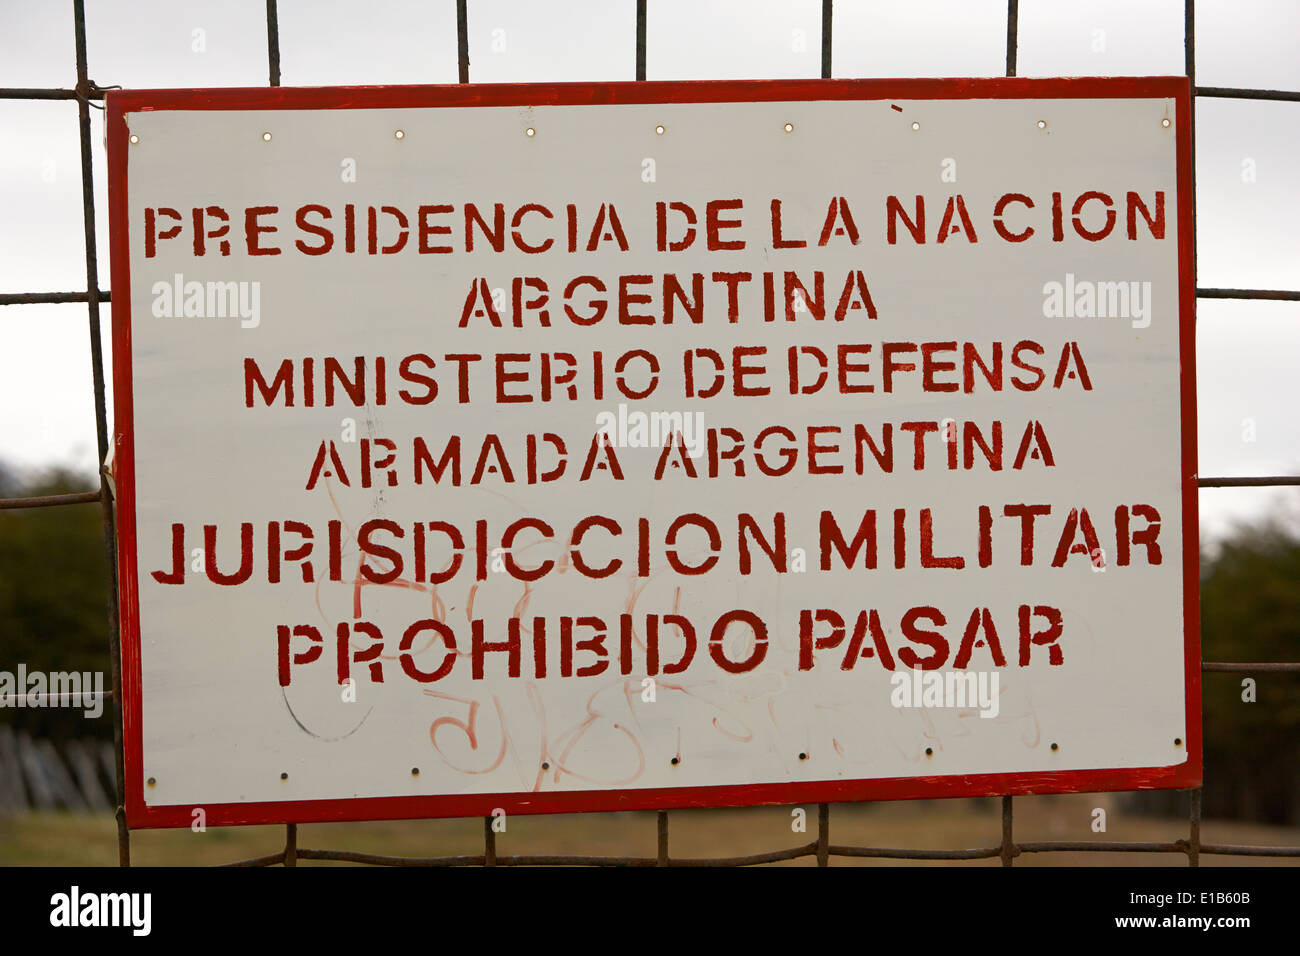 Argentine Argentine armada naval base prohibted entrée panneau d'avertissement d'installation militaire argentine Ushuaia Banque D'Images